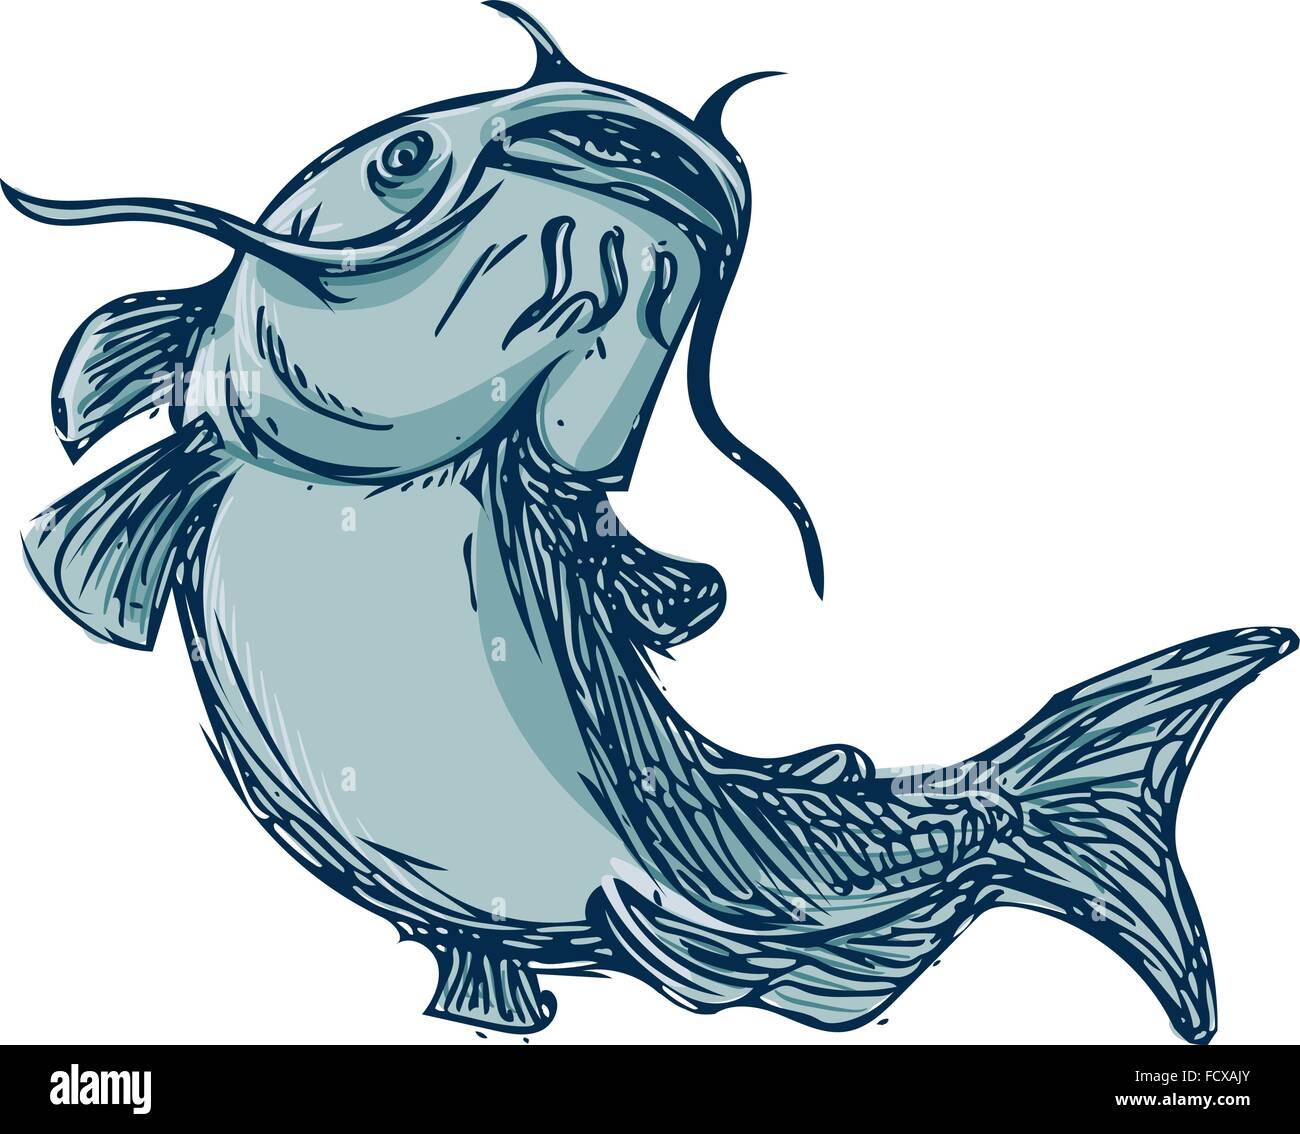 Styleillustration croquis dessin d'un poisson à nageoires aussi appelé poisson-chat, chat de boue ou polliwogs chucklehead sauter de haut situé sur Illustration de Vecteur